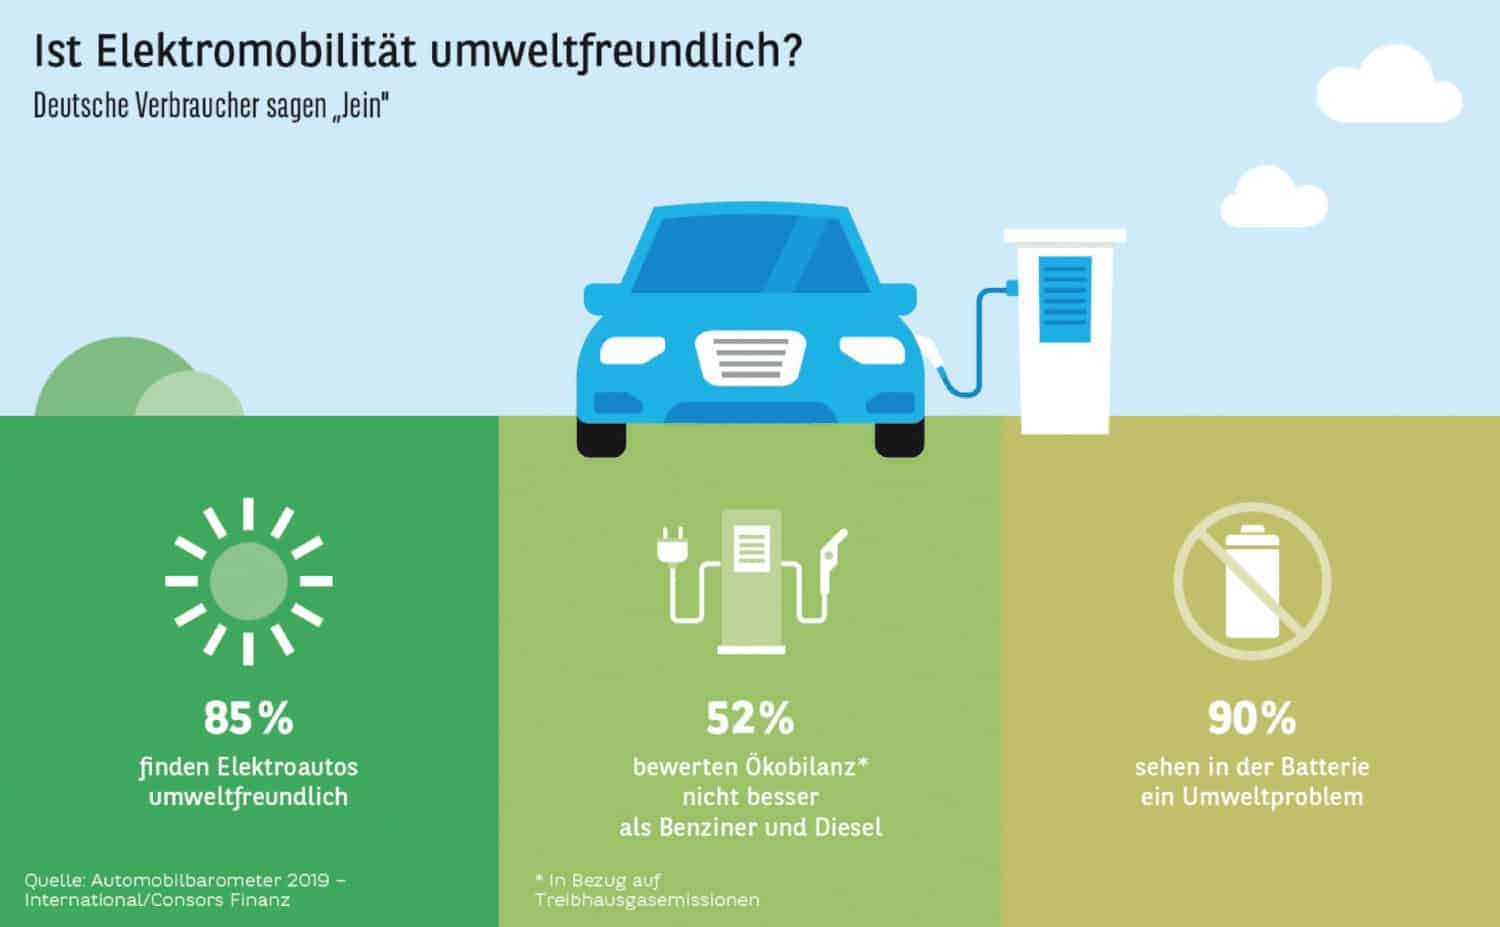 Verbraucher uneins bei Umweltfreundlichkeit der Elektromobilität